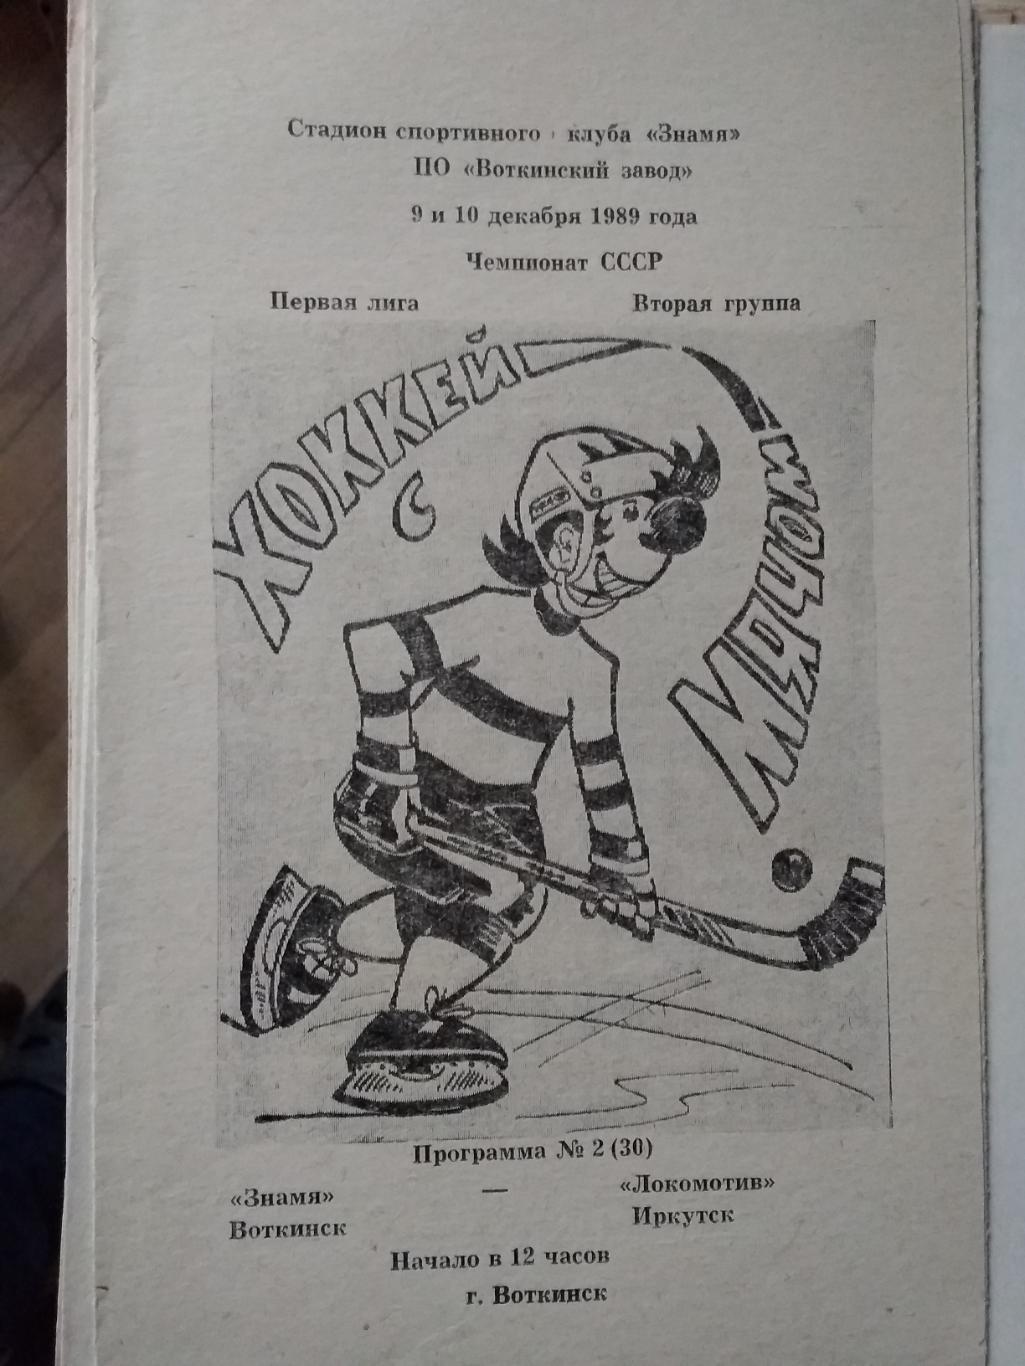 Знамя (Воткинск) - Локомотив (Иркутск). 9-10 декабря 1989.